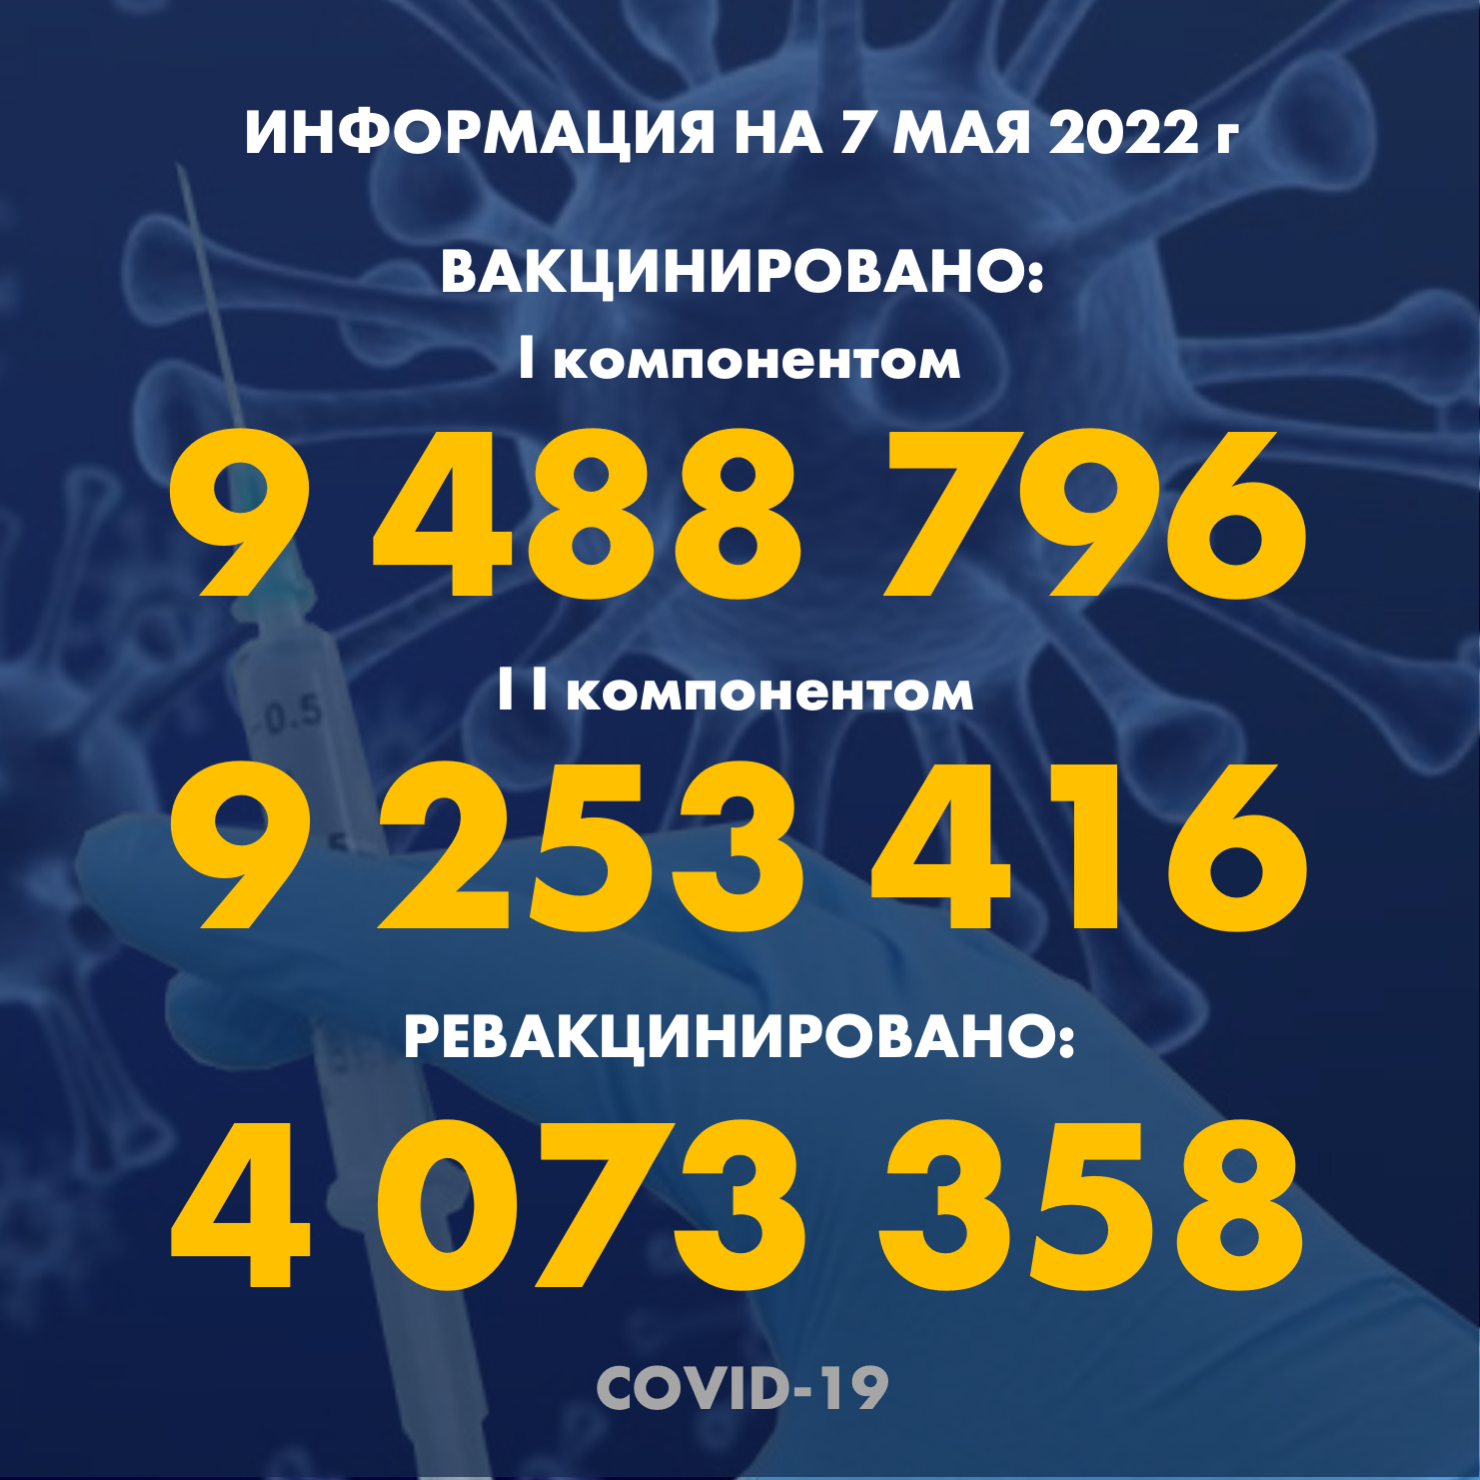 I компонентом 9 488 796 человек провакцинировано в Казахстане на 7.05.2022 г, II компонентом 9 253 416 человек. Ревакцинировано – 4 073 358